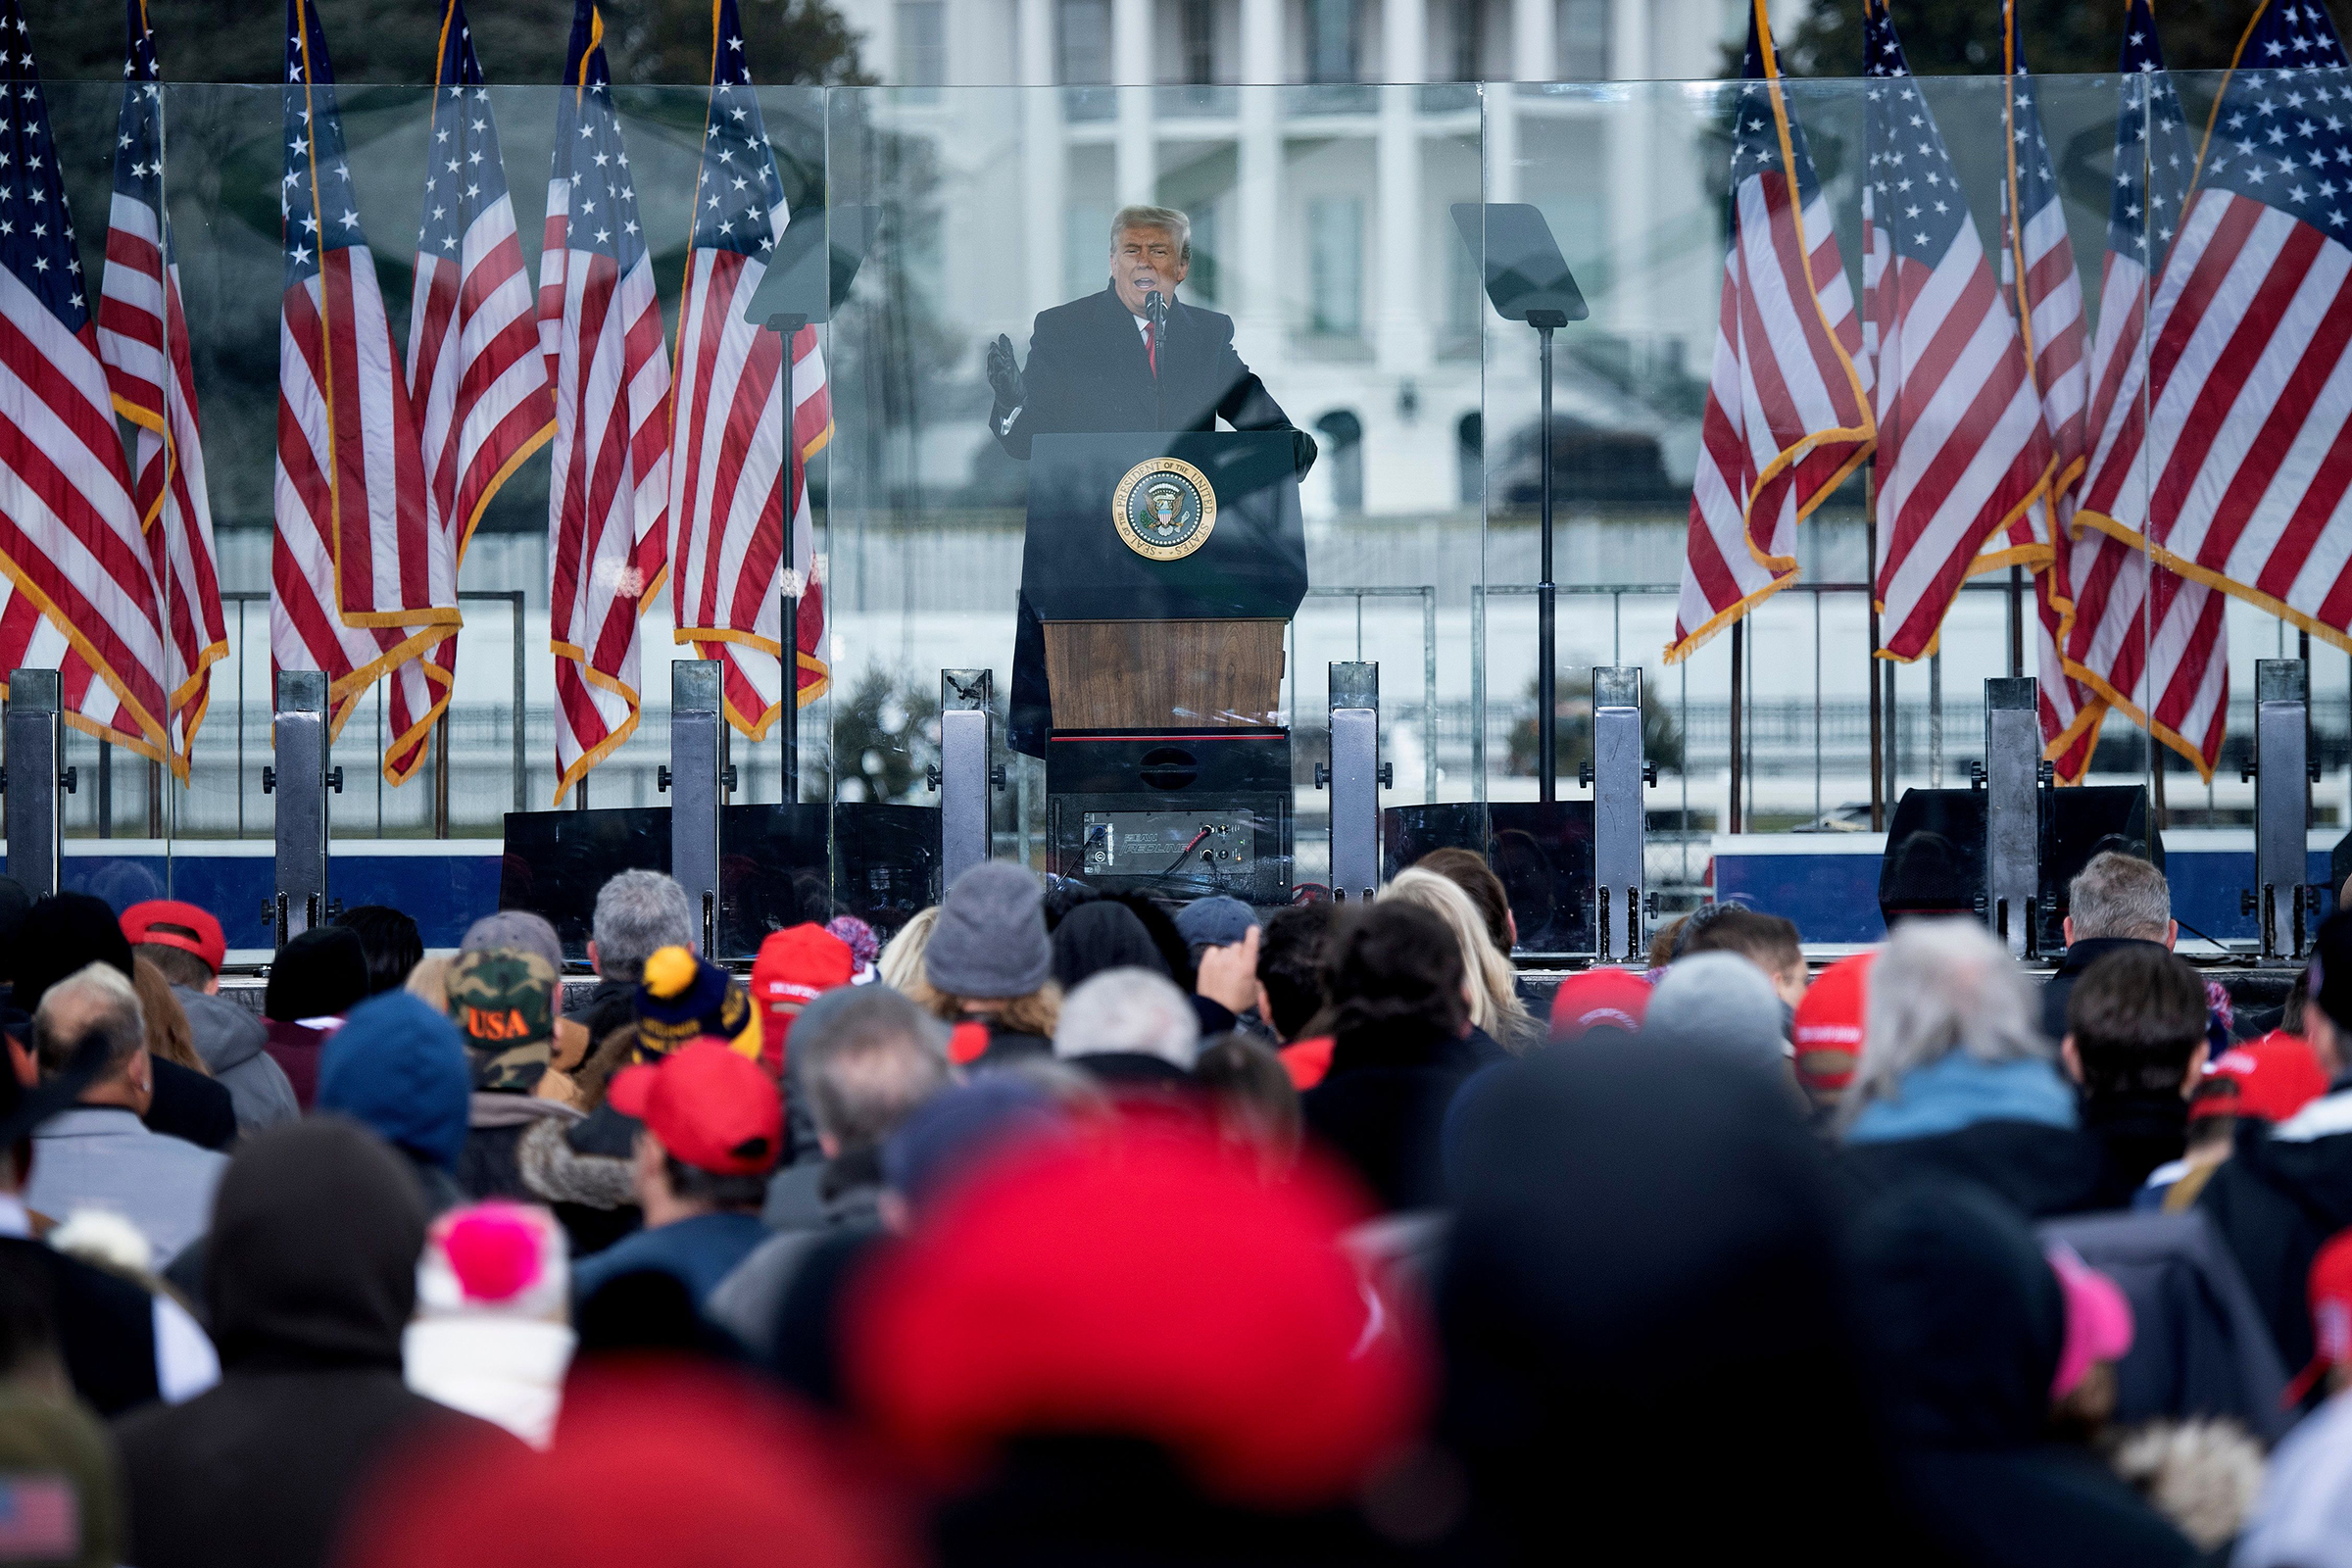 US-Präsident Donald Trump spricht am 6. Januar 2021 in The Ellipse in der Nähe des Weißen Hauses in Washington, D.C. mit Anhängern. Nach seiner Rede und angeheizt durch Trumps wochenlangen Versuch, die Ergebnisse der Präsidentschaftswahl 2020 zu kippen, versammelten sich Tausende seiner Anhänger stürmte das US-Kapitol